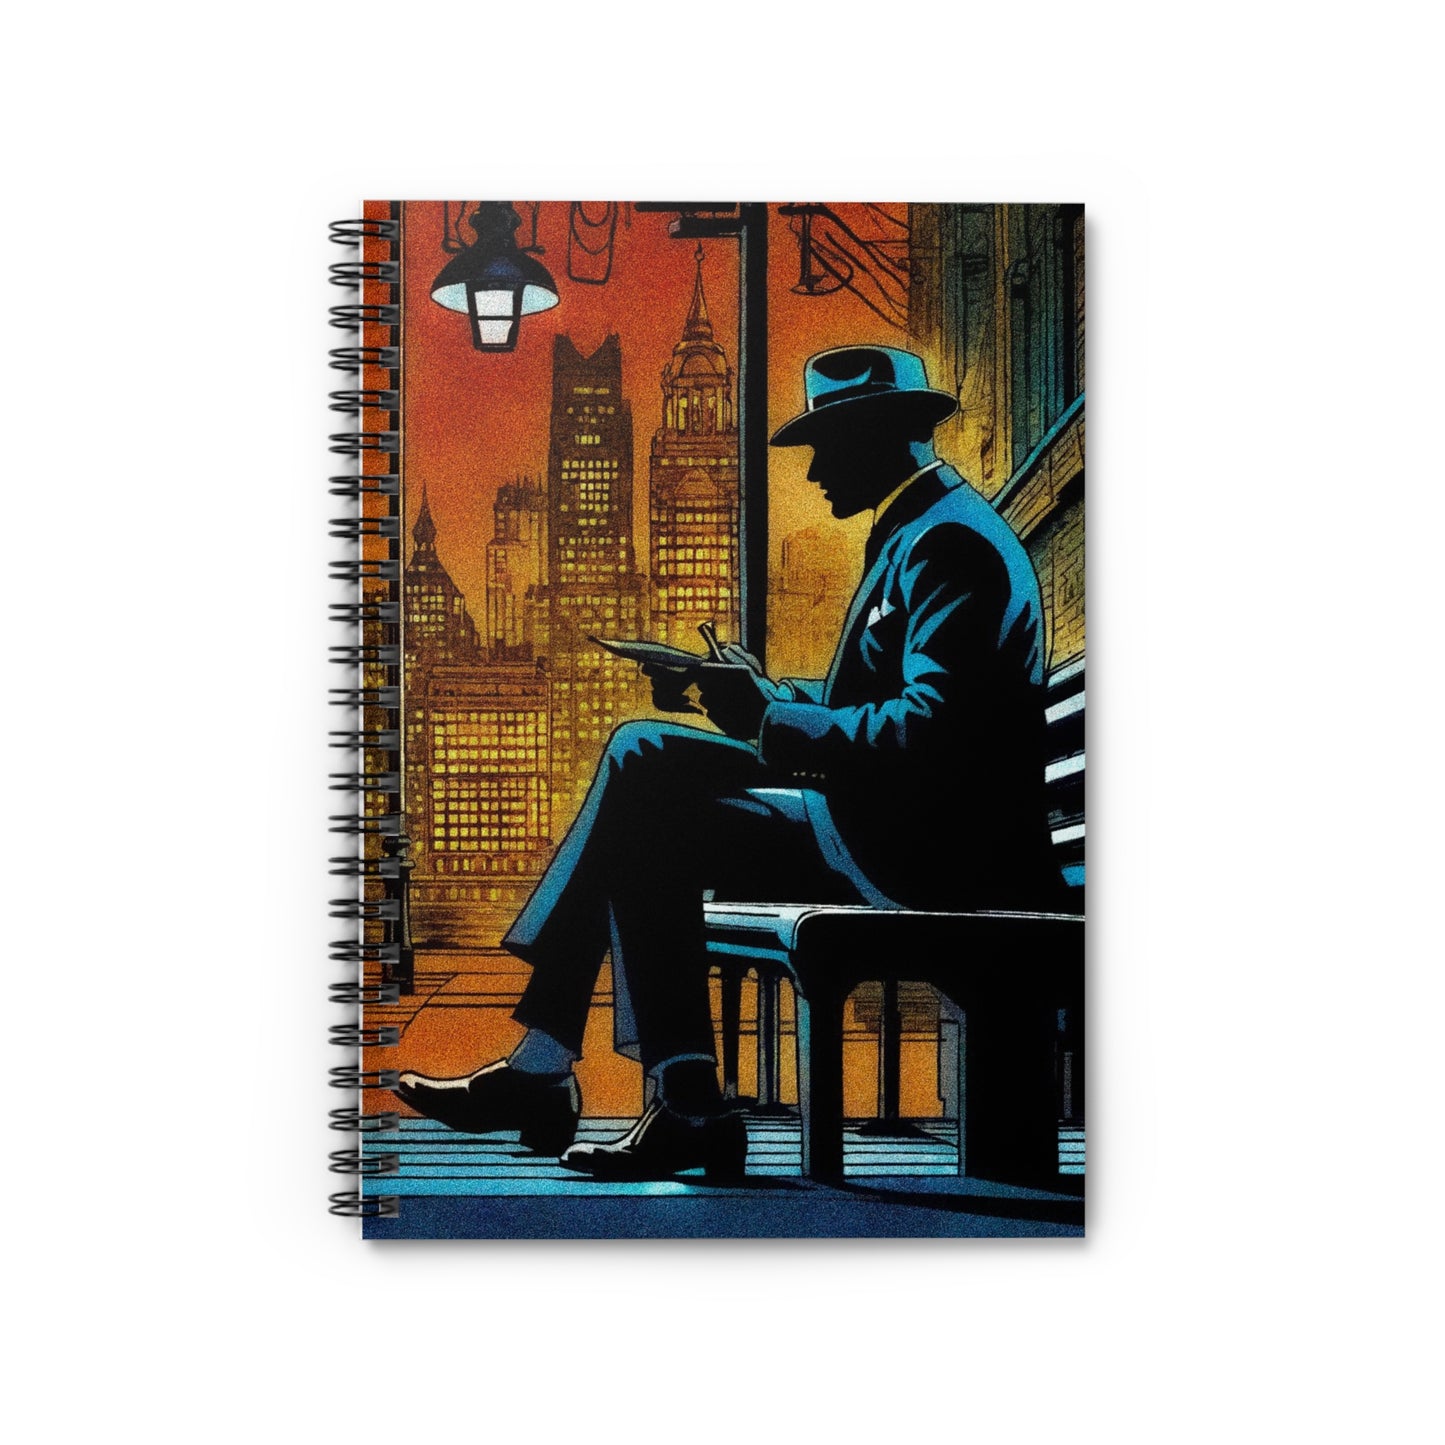 The Gentleman's Notebook